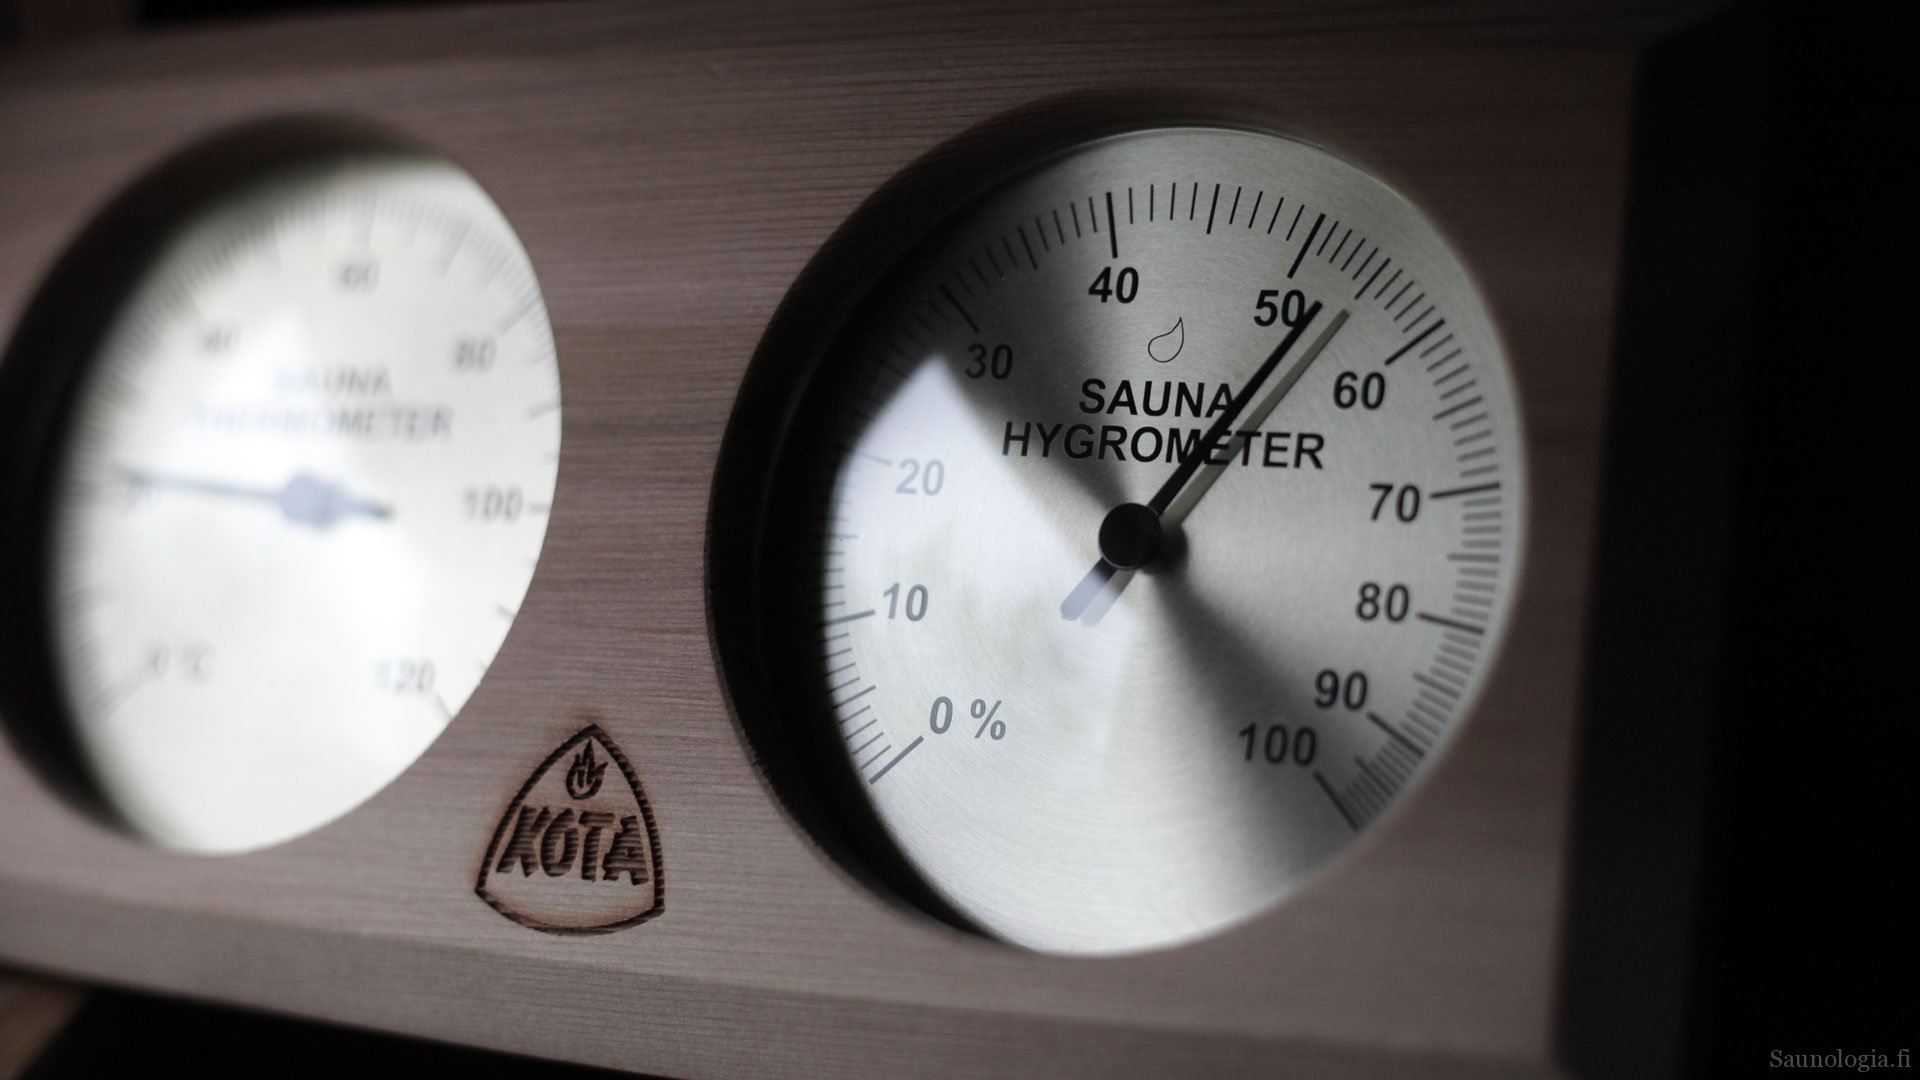 Mihin saunan lämpömittari  kannattaa sijoittaa?